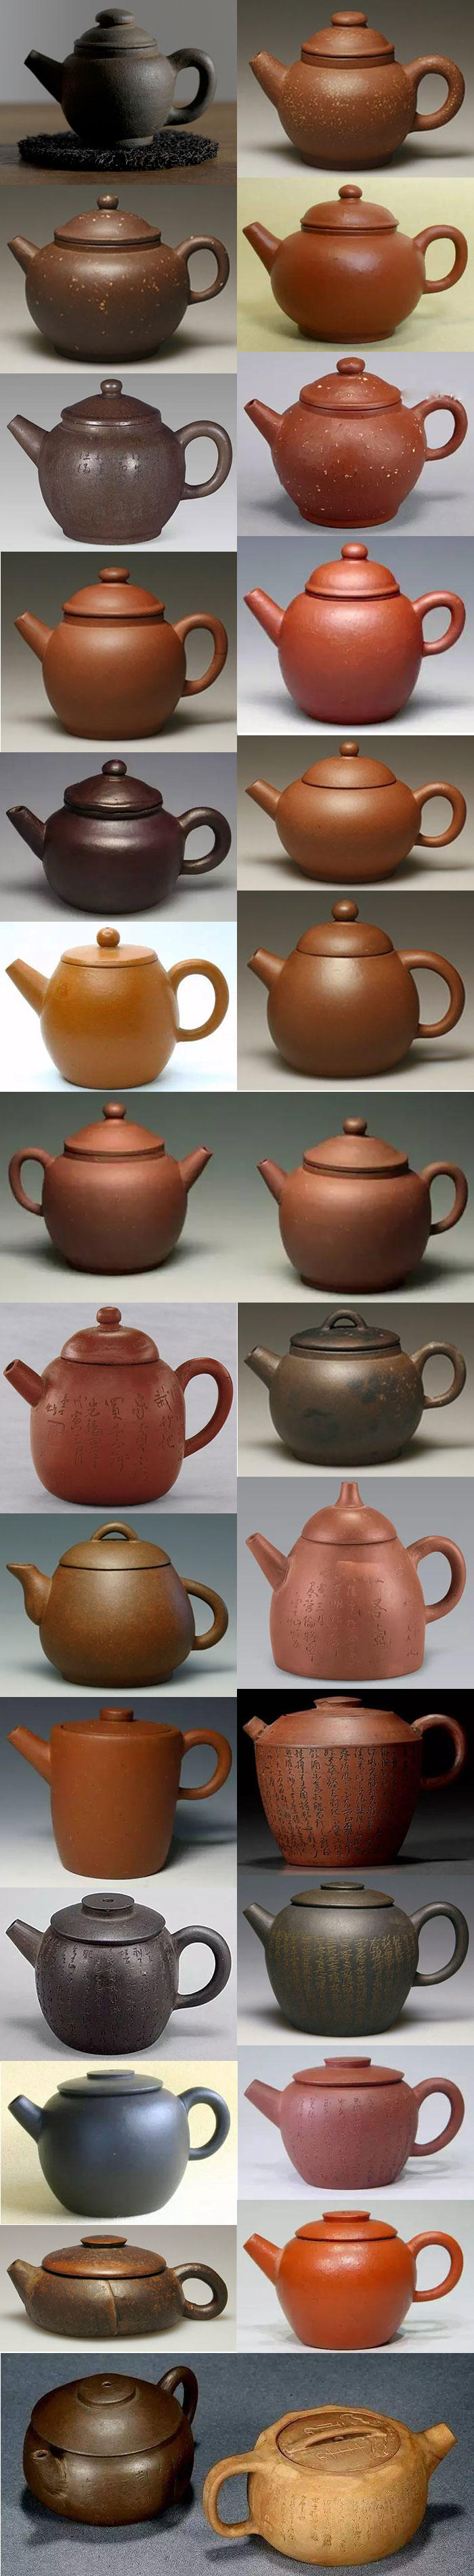 歴史的具輪茶壺